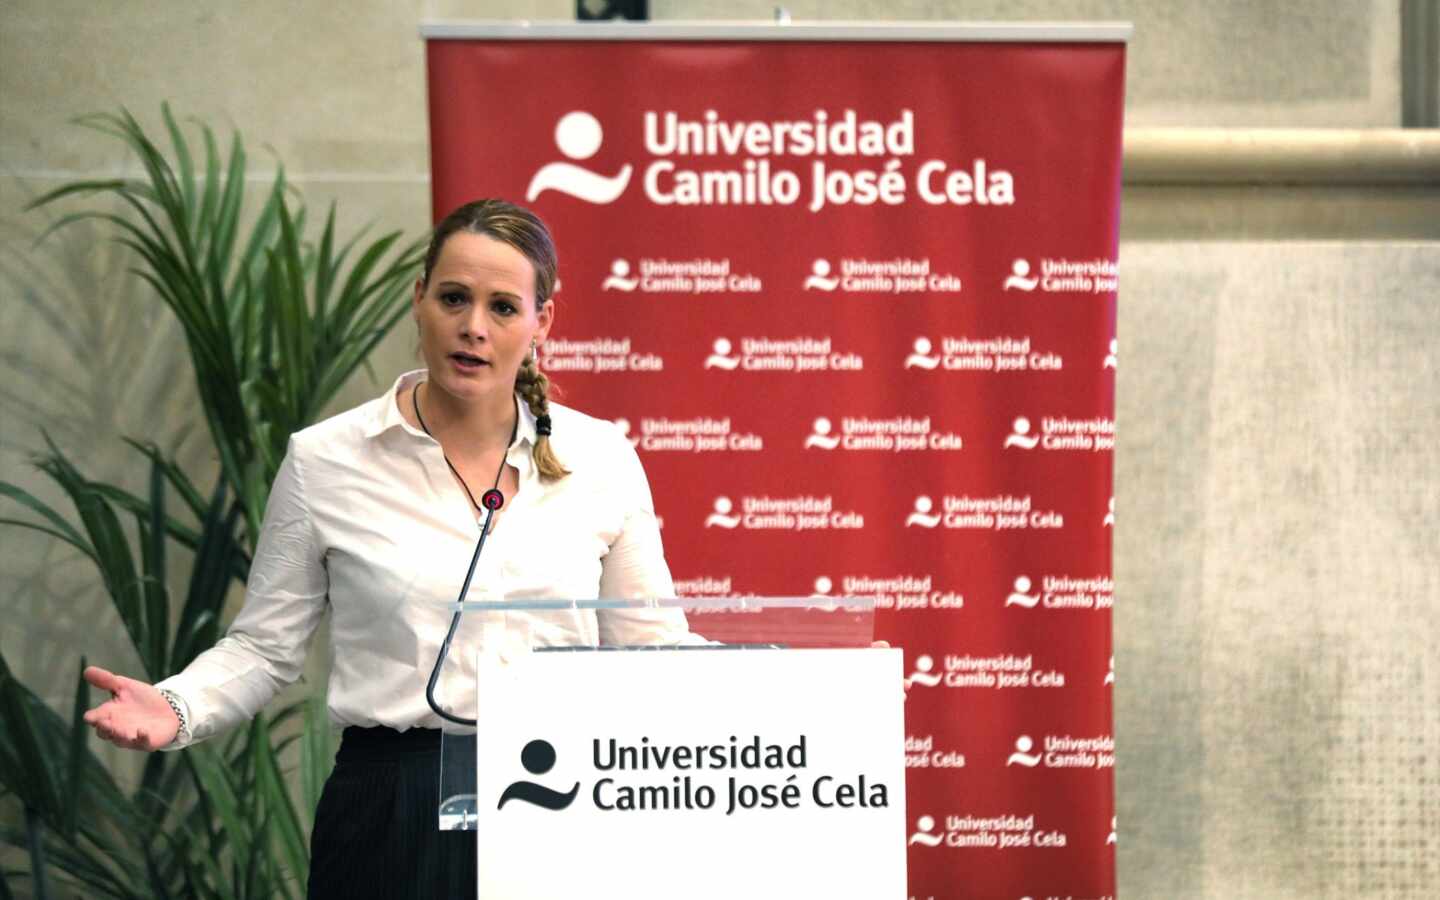 La diputada socialista Zaida Cantera, presidenta de la delegación española en la asamblea parlamentaria de la OTAN, en una conferencia.